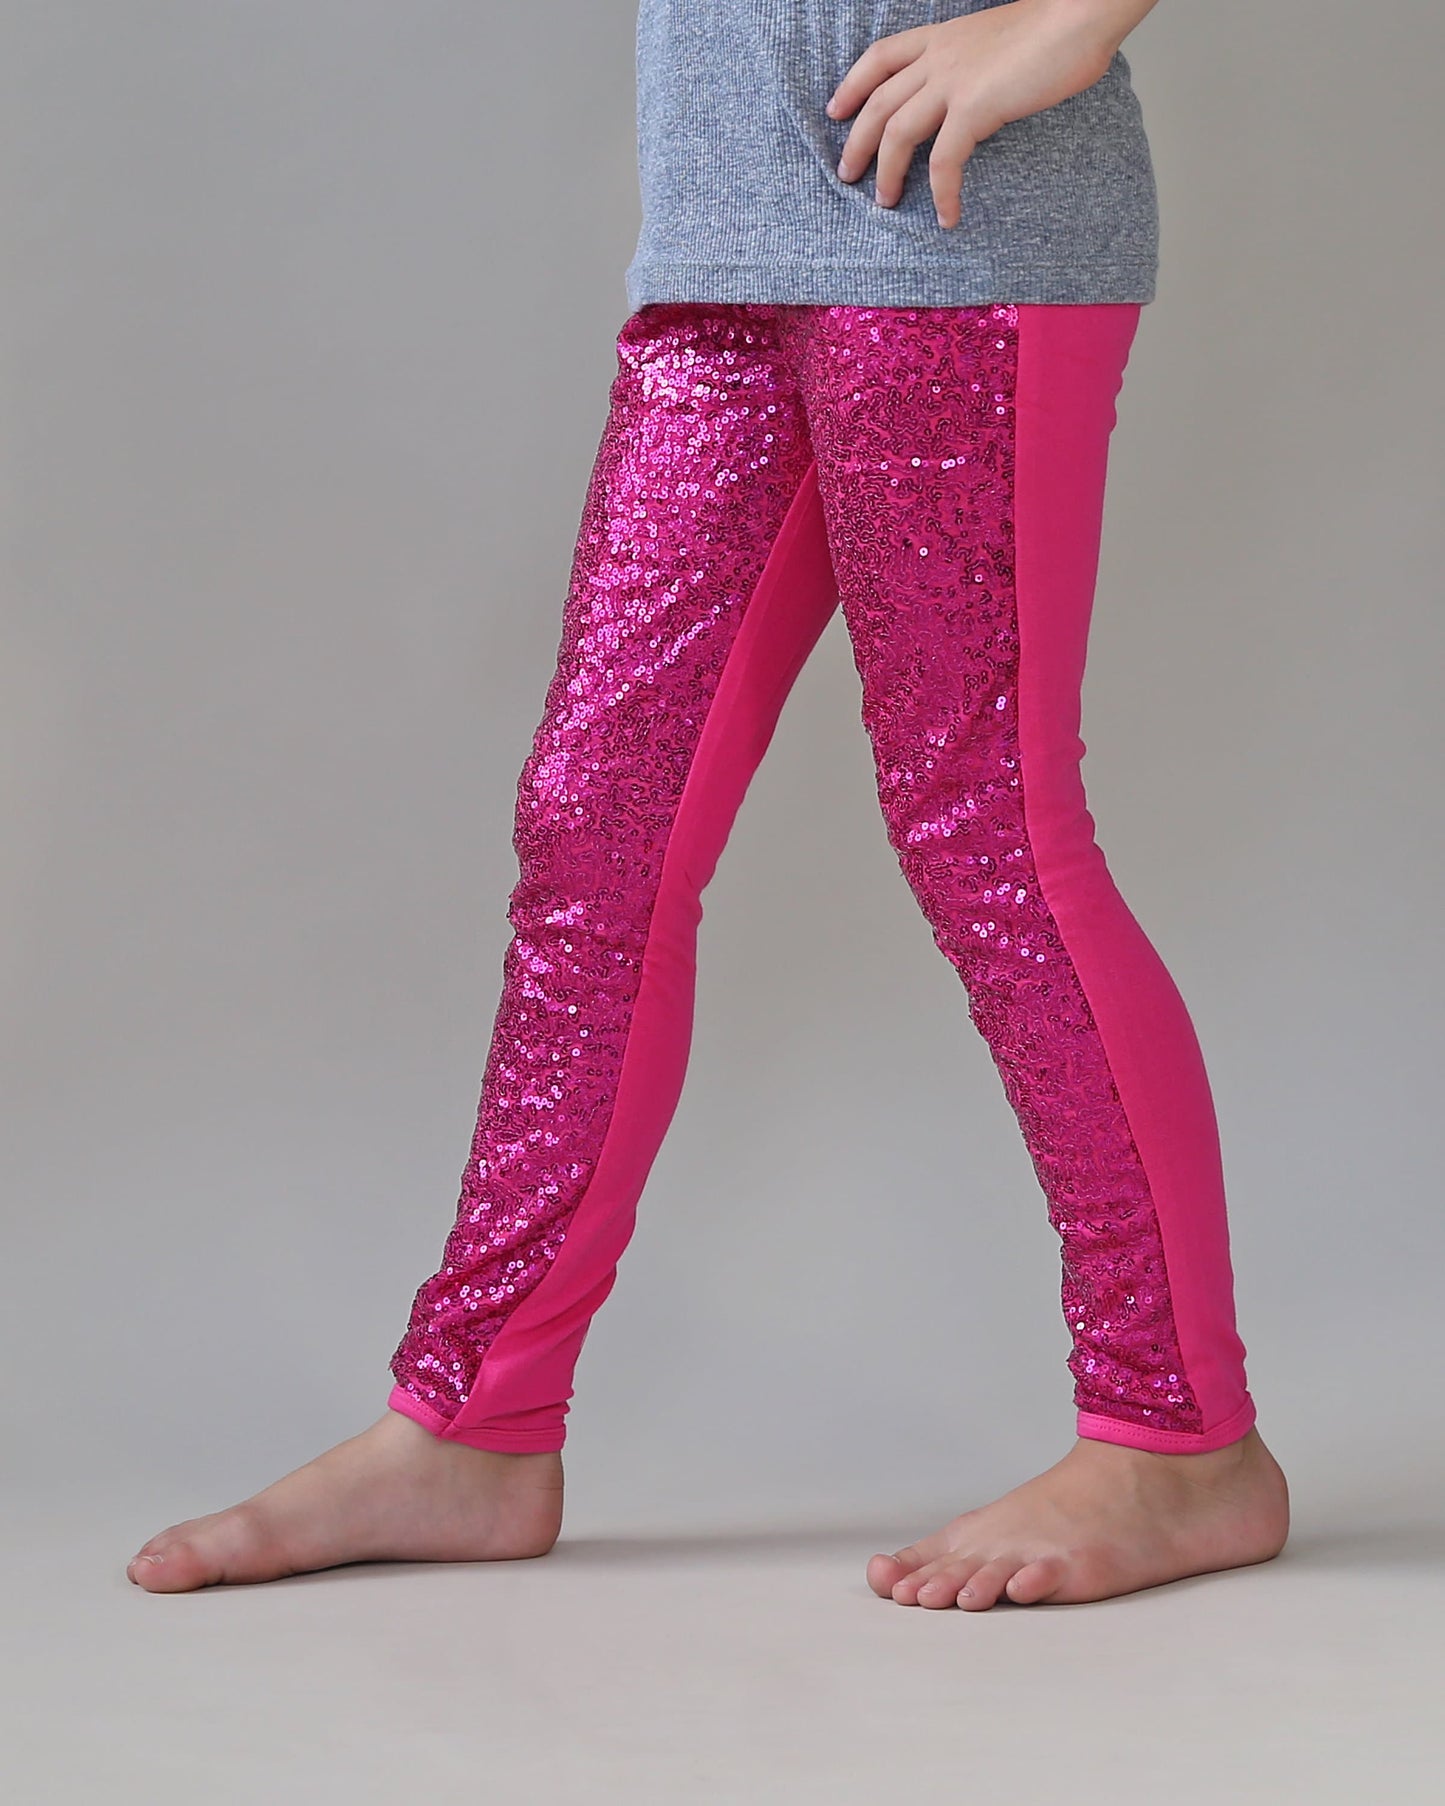 Sequin Leggings in Hot Pink